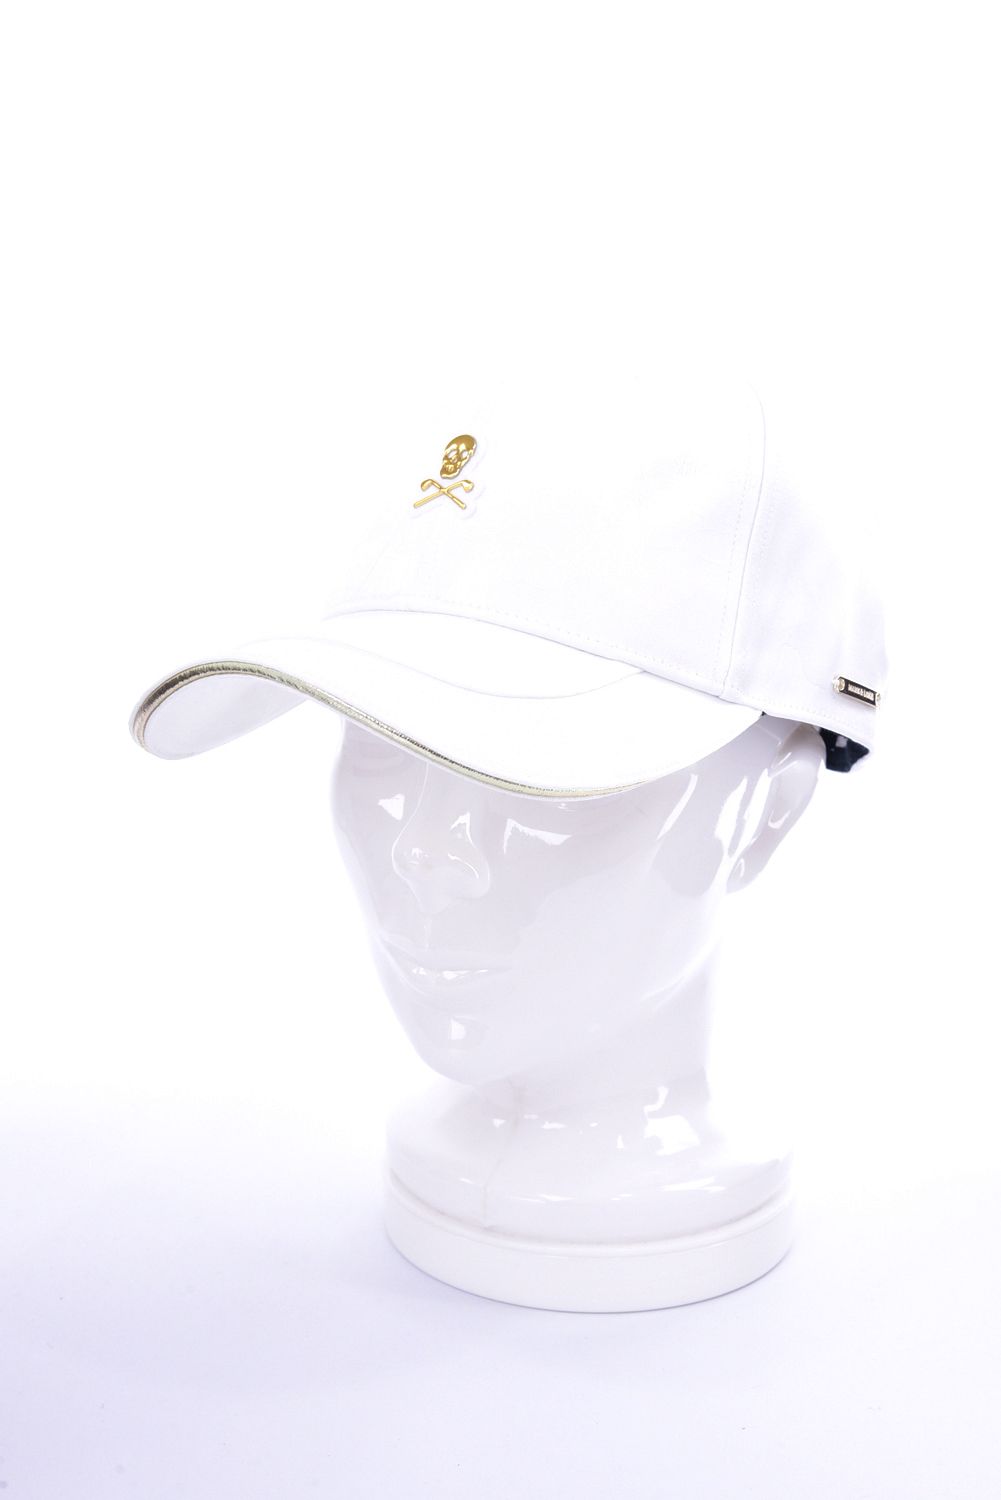 総合ランキング1位受賞 【MARK&LONA】キャップ ホワイトカモフラ - 帽子